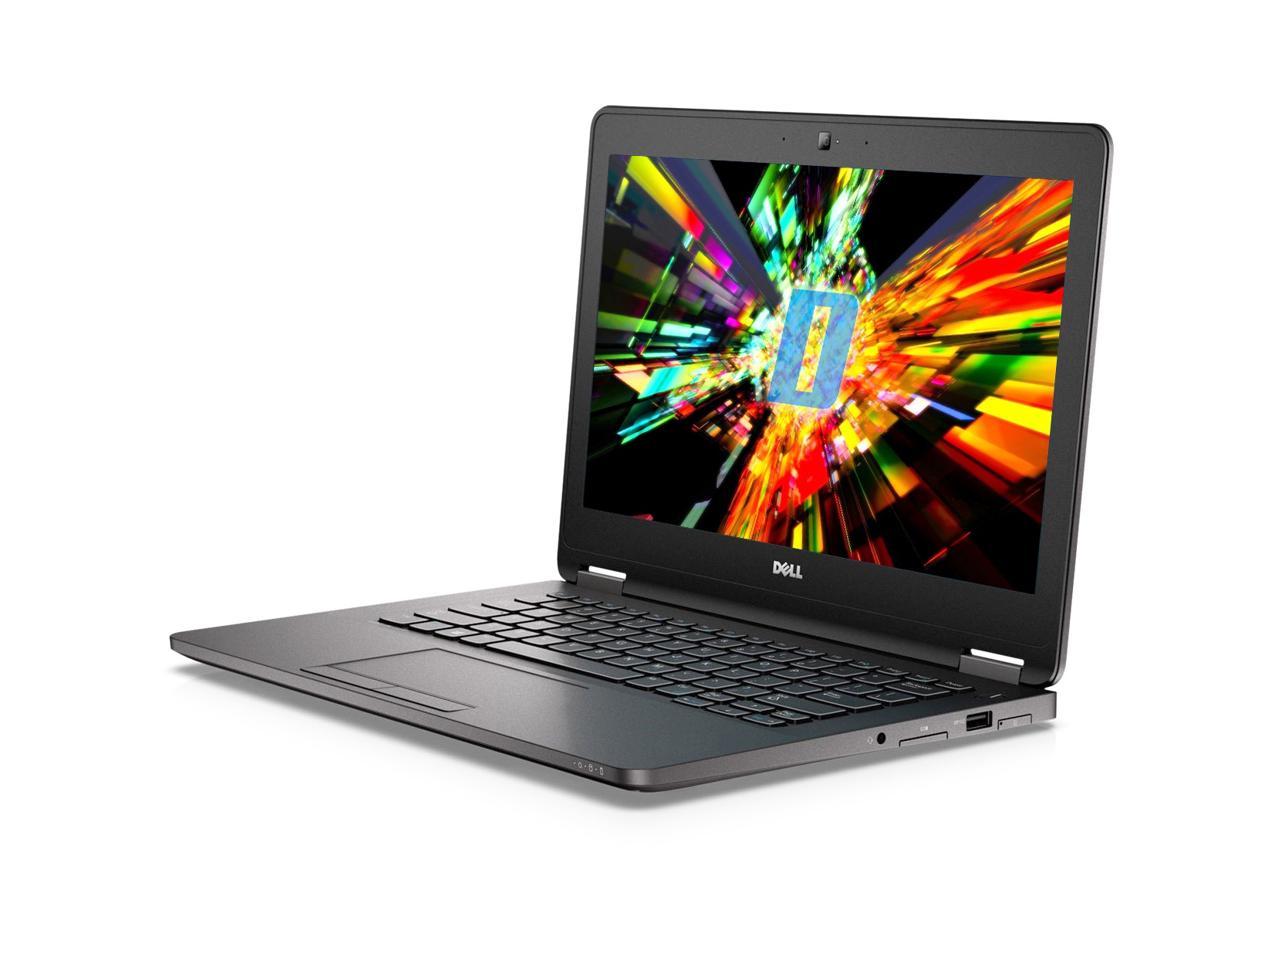 Dell Latitude E7270 12.5" Laptop, Intel Core i7 6600U 2.6Ghz, 16GB DDR4, 256GB M.2 SSD, HDMI, Webcam, Windows 10